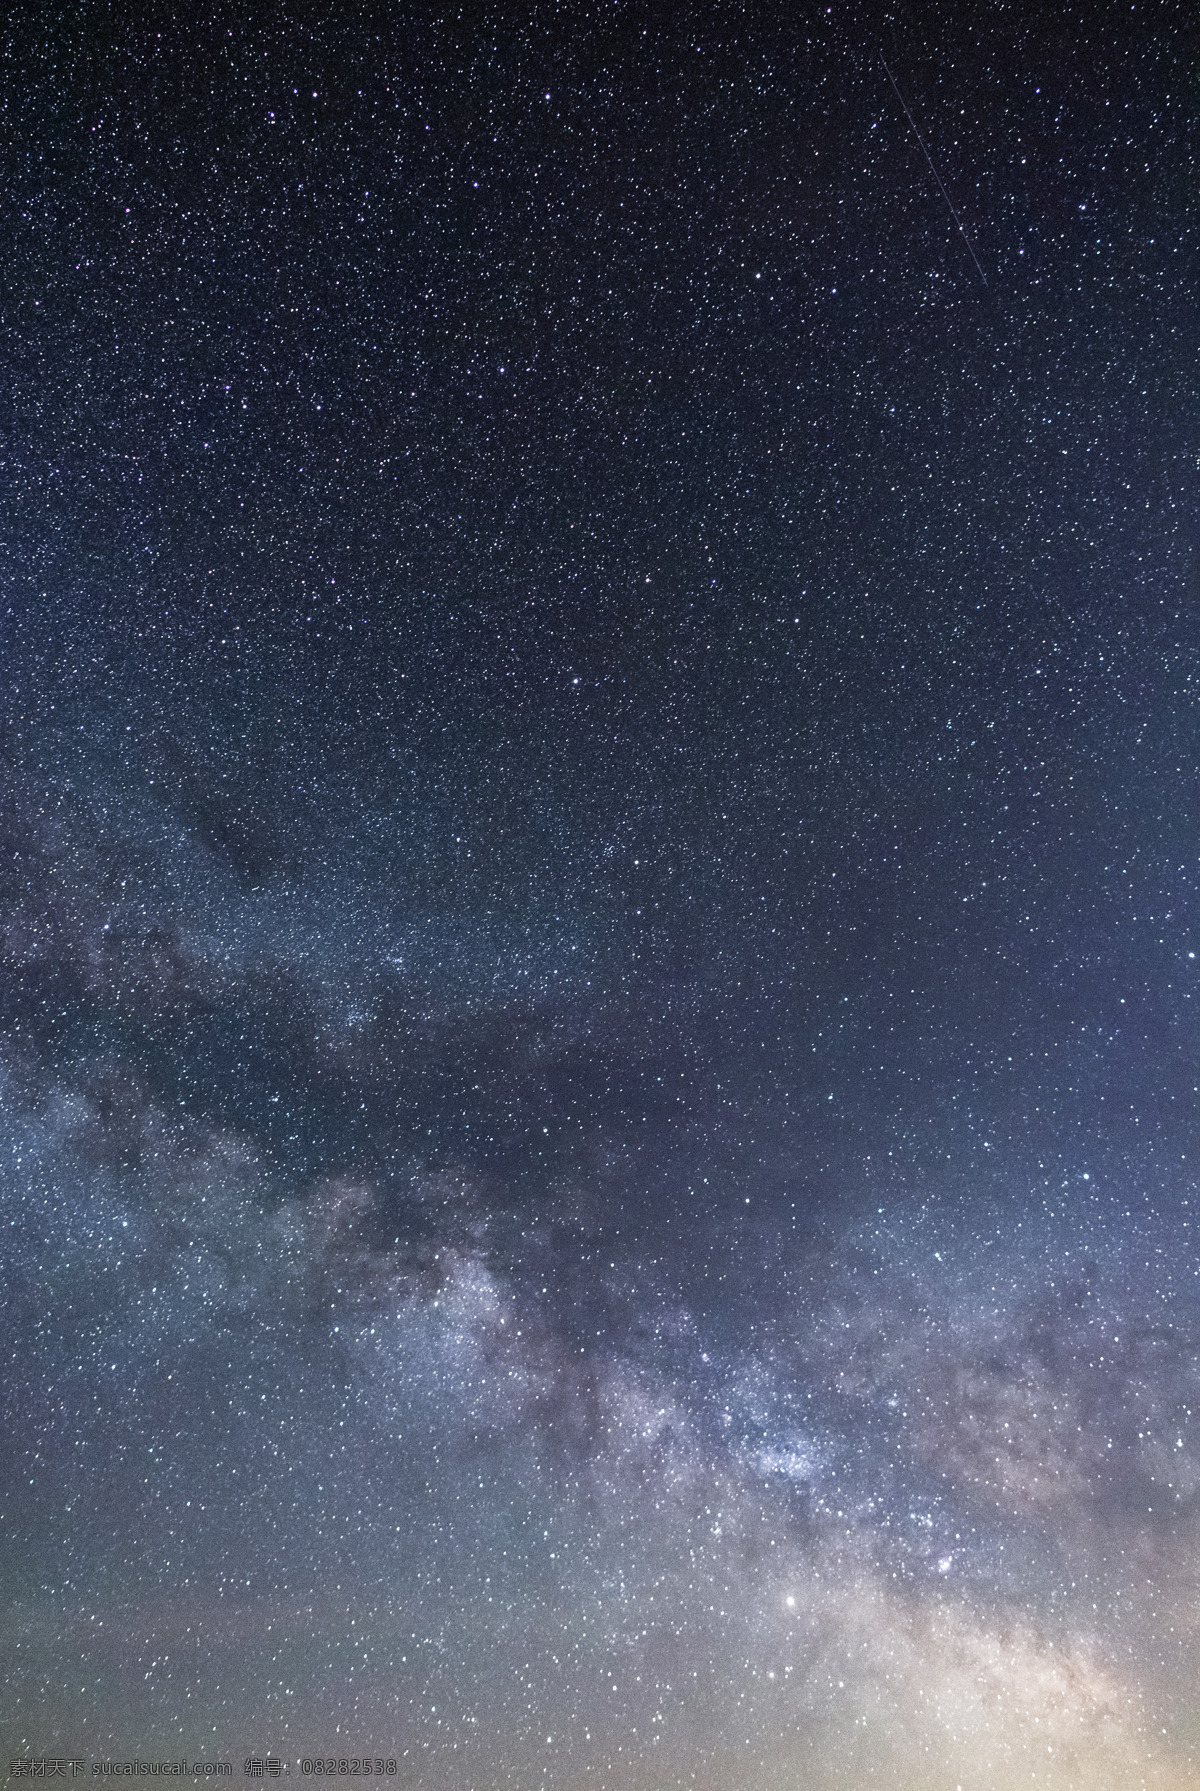 银河系 天文学 星座 宇宙 银河 星云 夜色 天空 空间 星辰 自然景观 自然风景